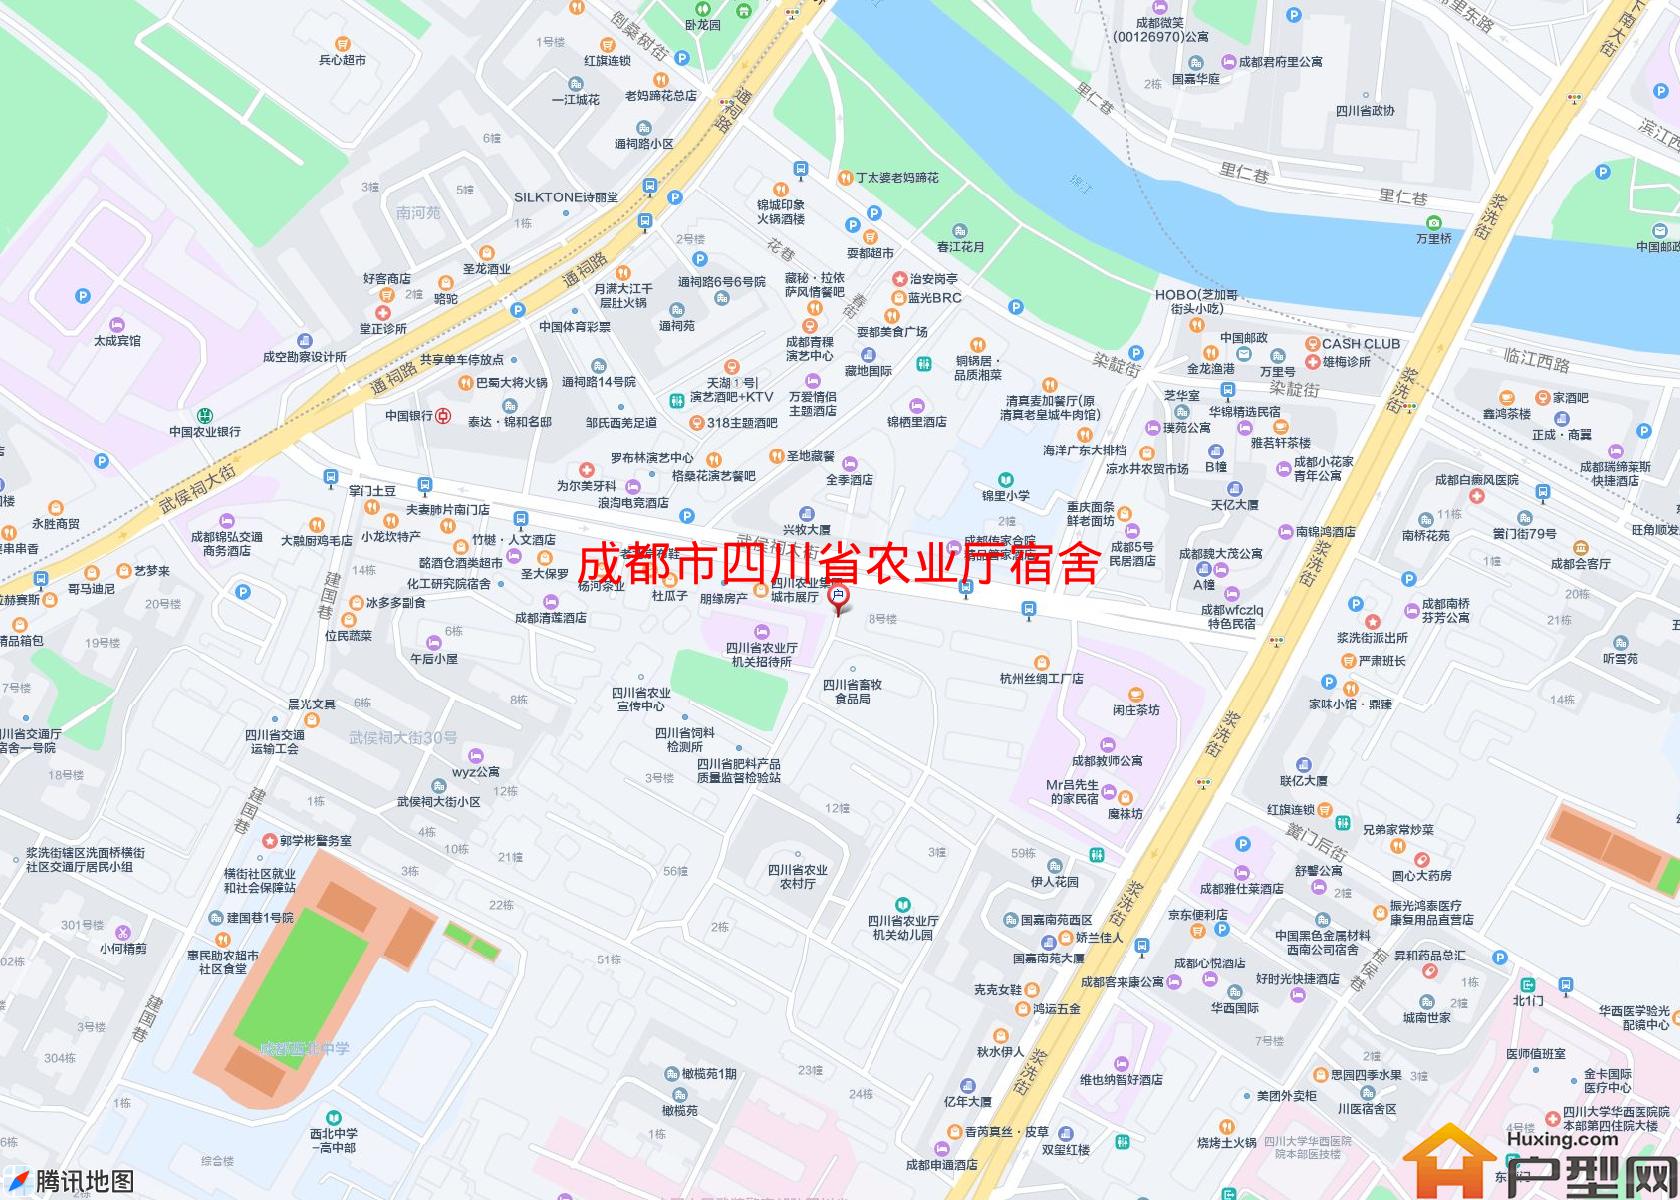 四川省农业厅宿舍小区 - 户型网